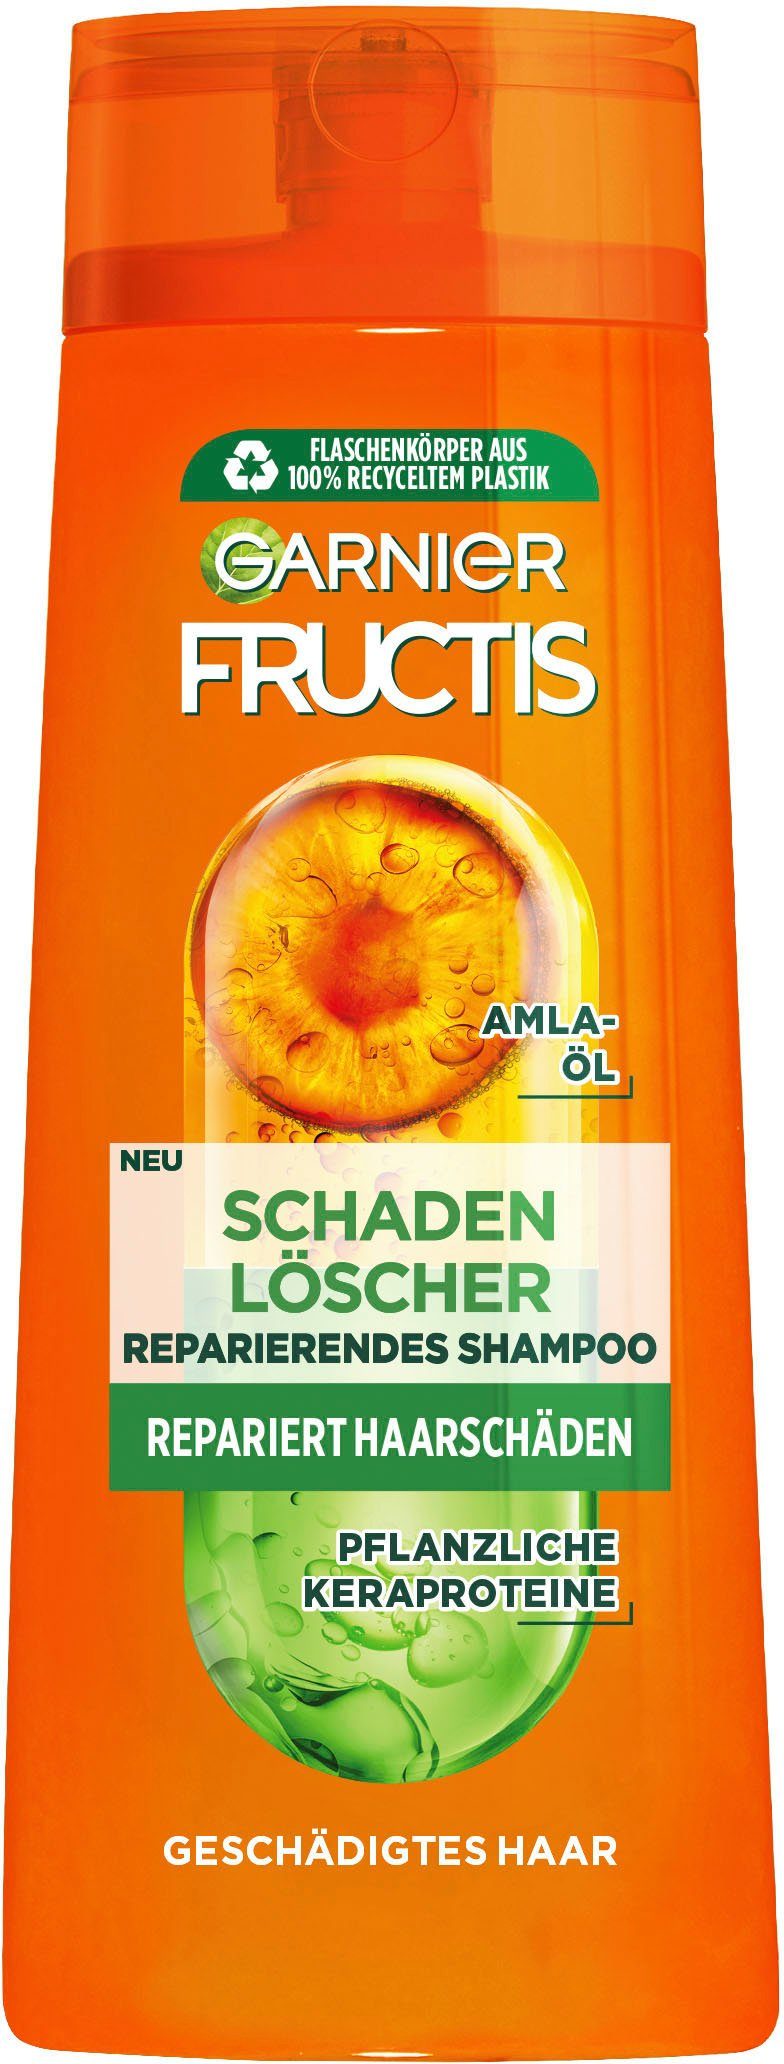 Shampoo, Fructis Schadenlöscher Haarshampoo GARNIER Set, Garnier 6-tlg.